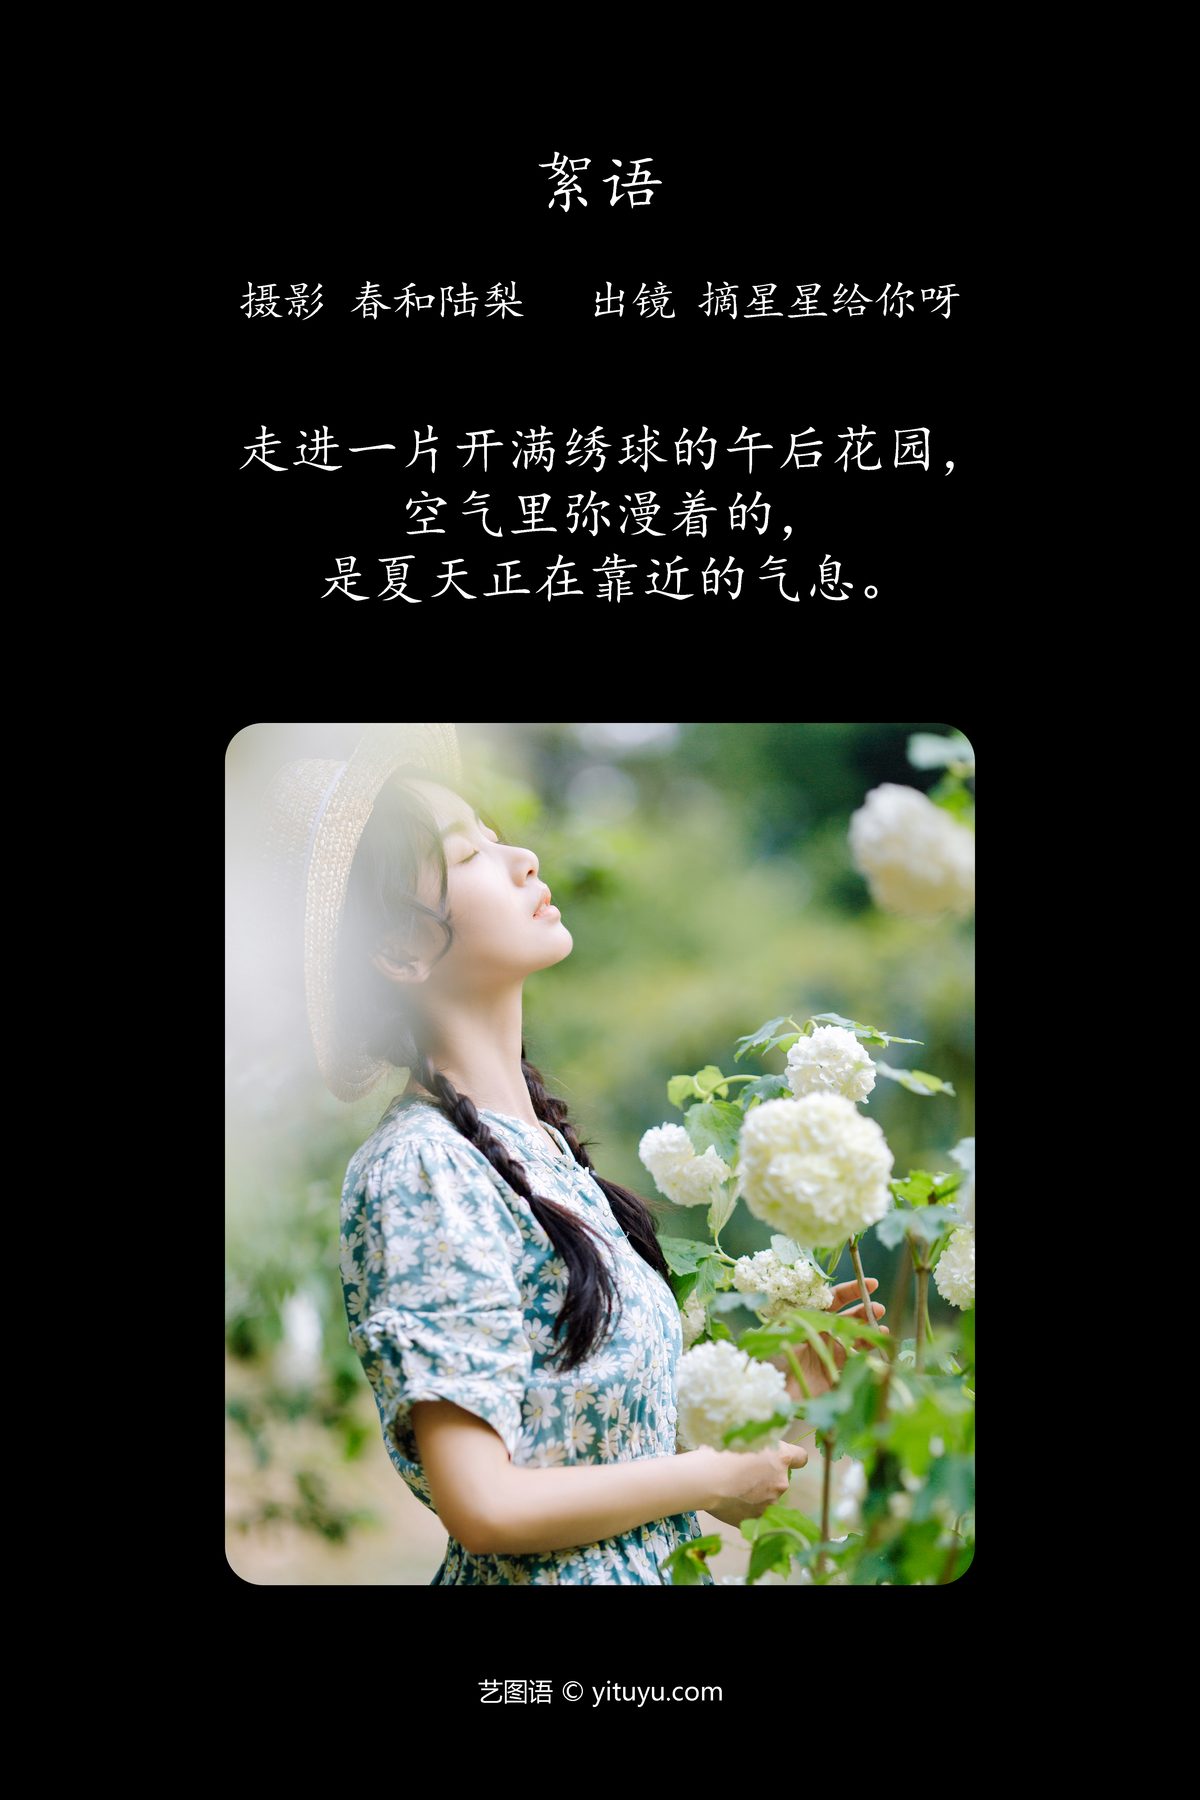 YiTuYu艺图语 Vol 4660 Zhai Xing Xing Gei Ni Ya 0002 3032998890.jpg